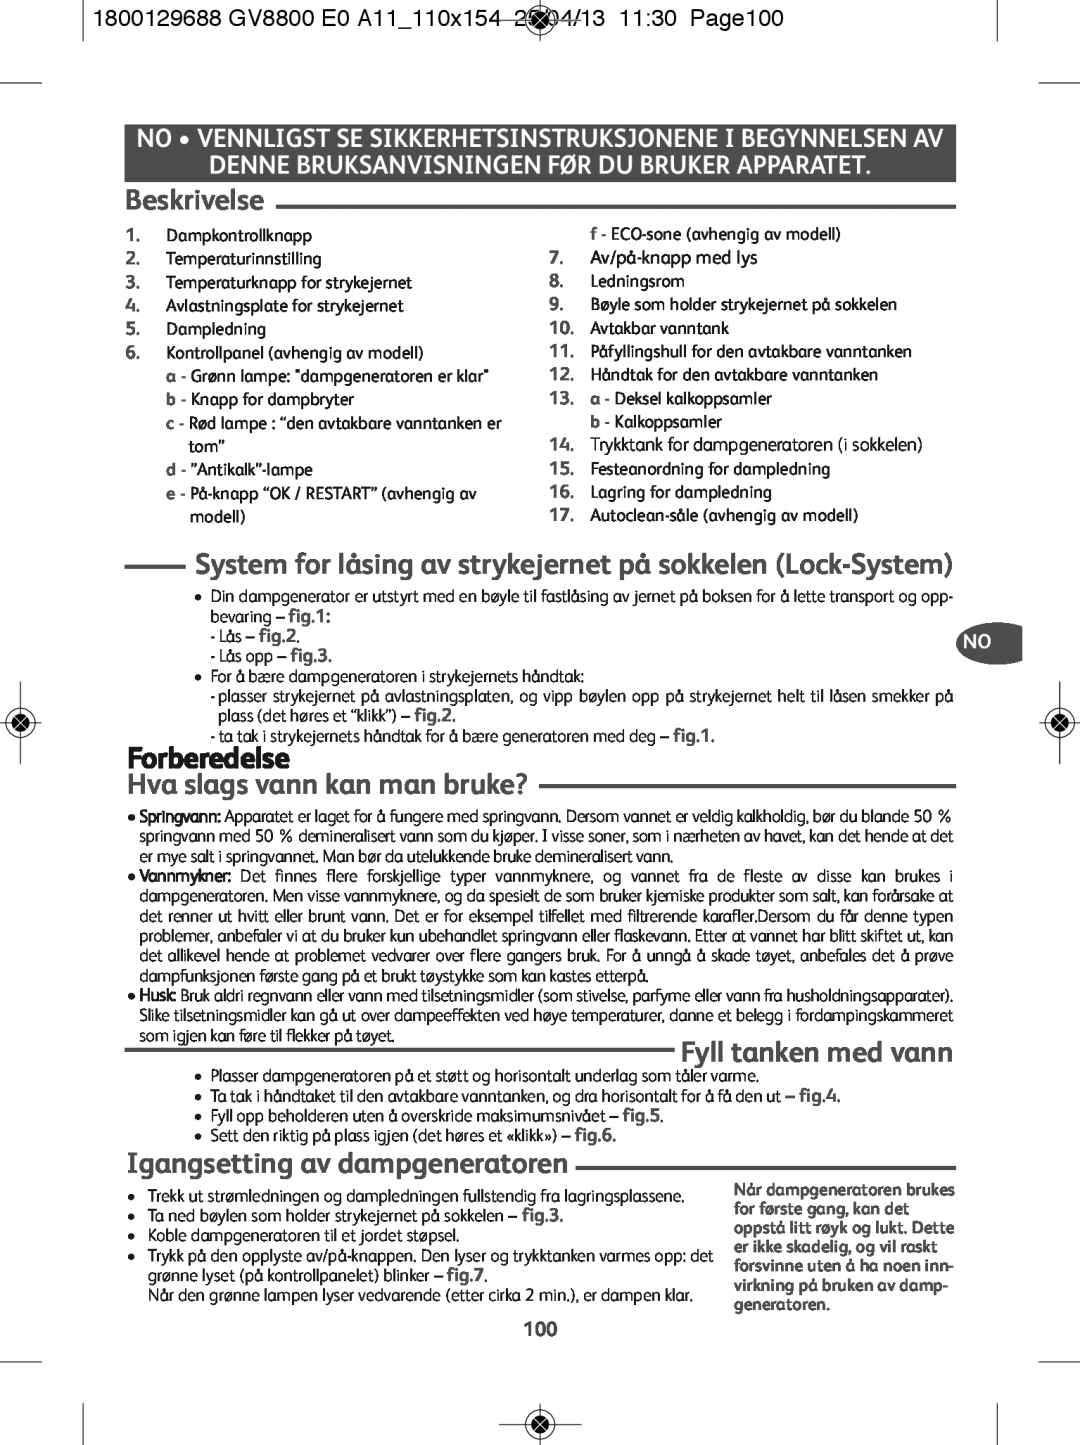 Tefal GV8800C0 Beskrivelse, System for låsing av strykejernet på sokkelen Lock-System, Forberedelse, Fyll tanken med vann 